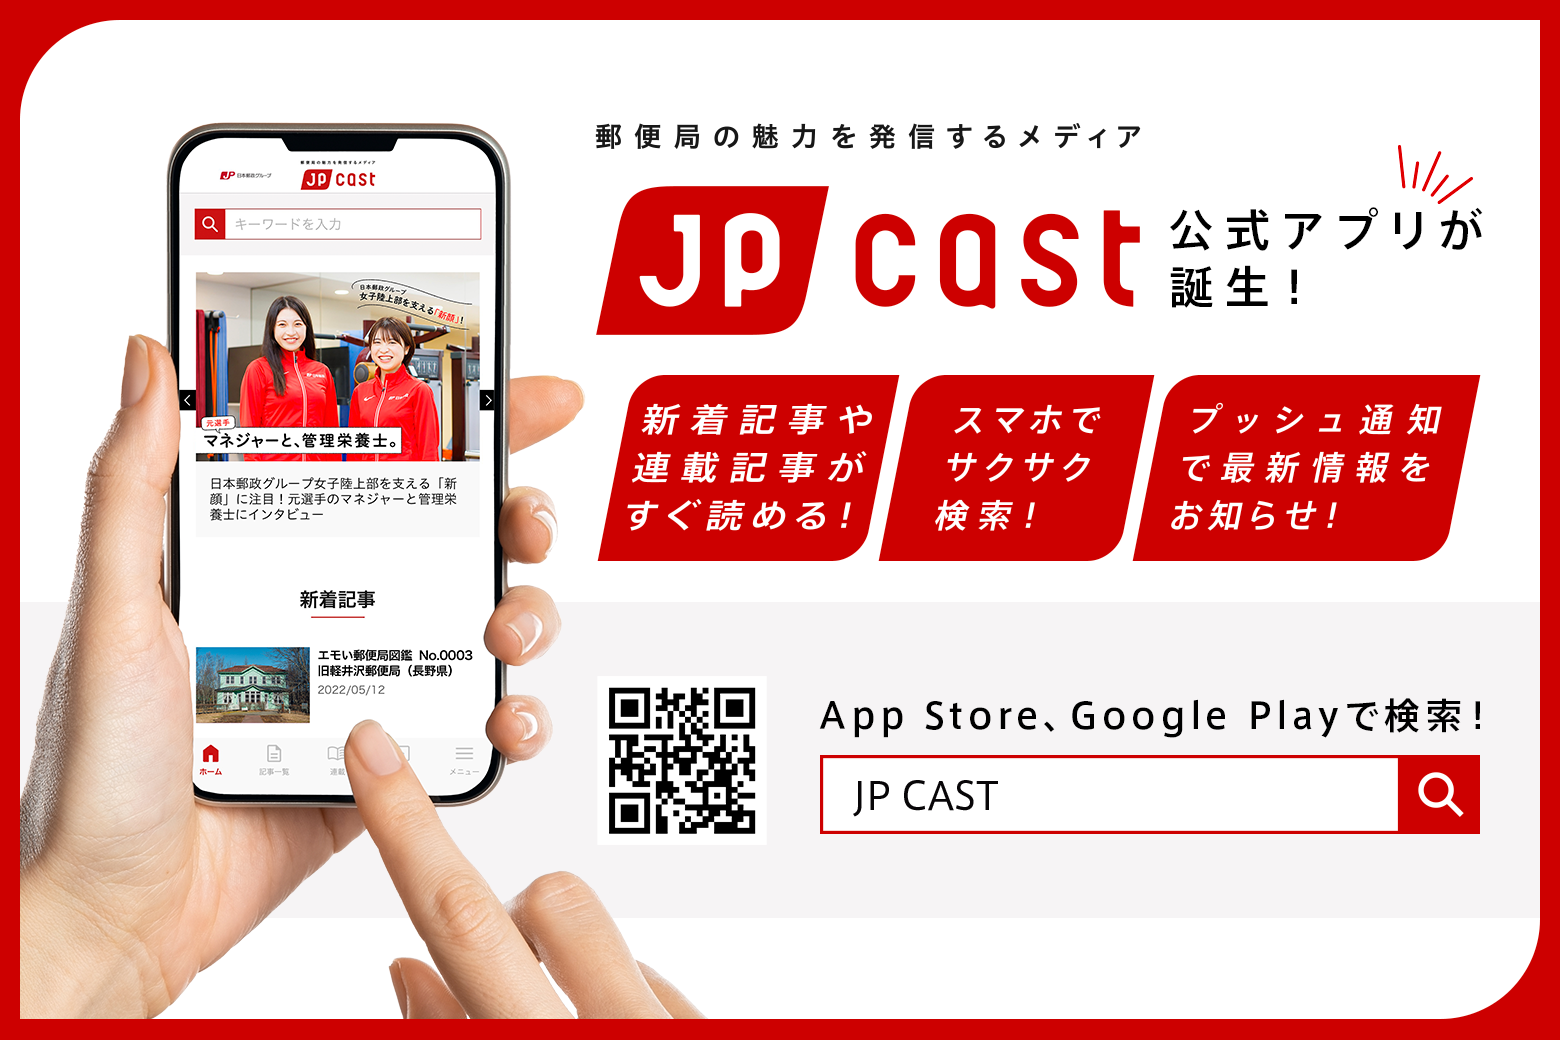 より簡単・便利に！郵便局の魅力を発信するメディア「JP CAST」の公式アプリが誕生